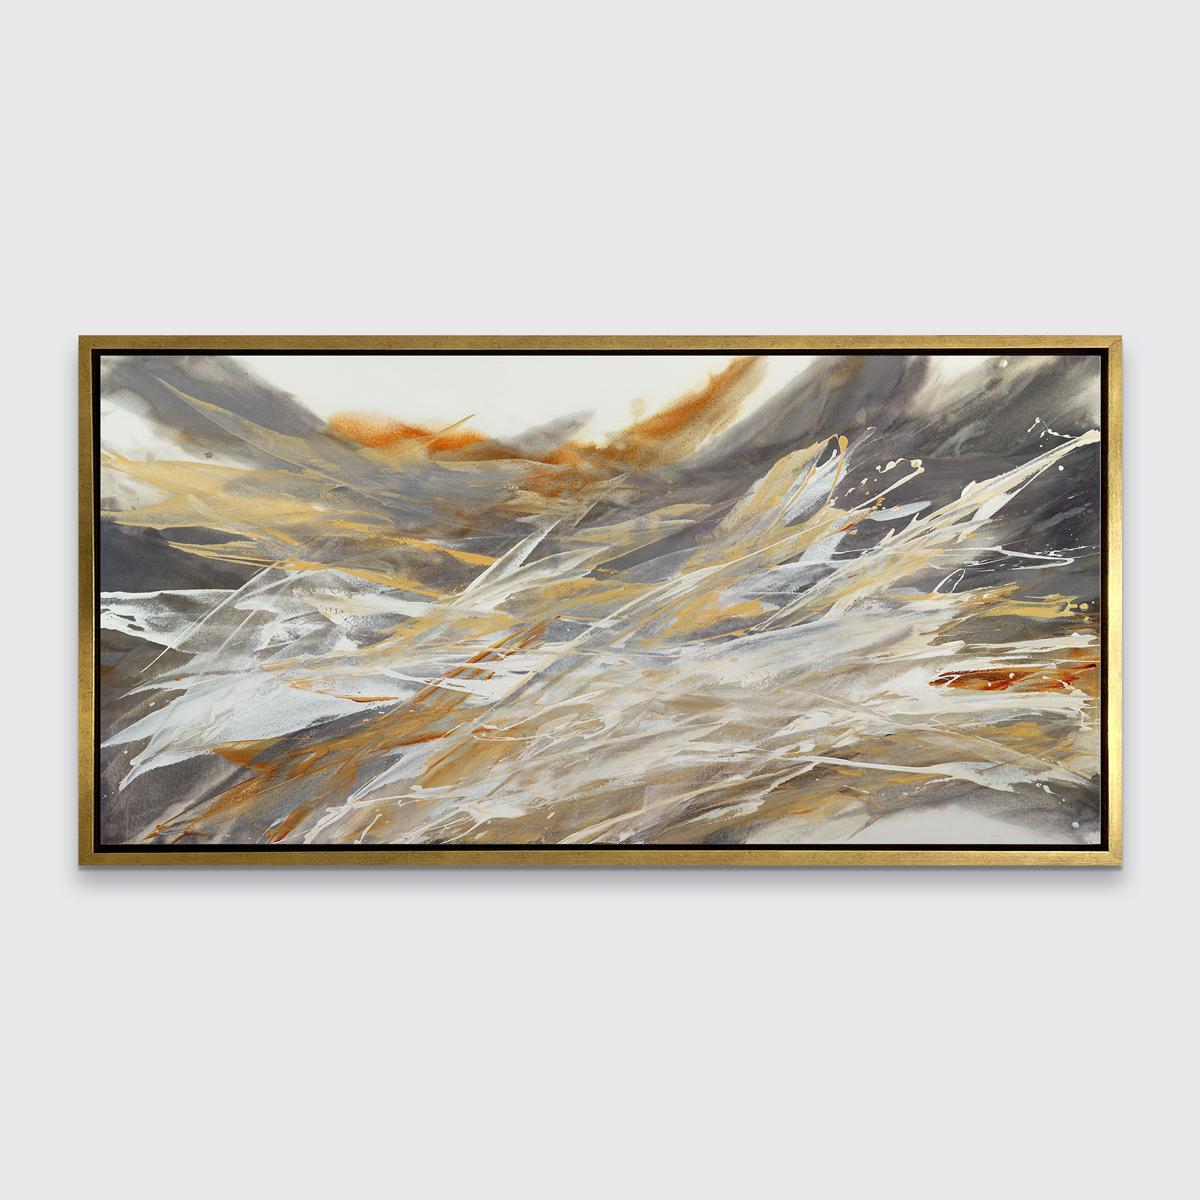 Dieser abstrakte Druck in limitierter Auflage von Teodora Guererra zeichnet sich durch eine warme Farbpalette mit großen Strichen und Verwaschungen in Grau, gedämpftem Gelb-Orange, gebranntem Siena und Weiß aus, die sich über das Gemälde zum linken